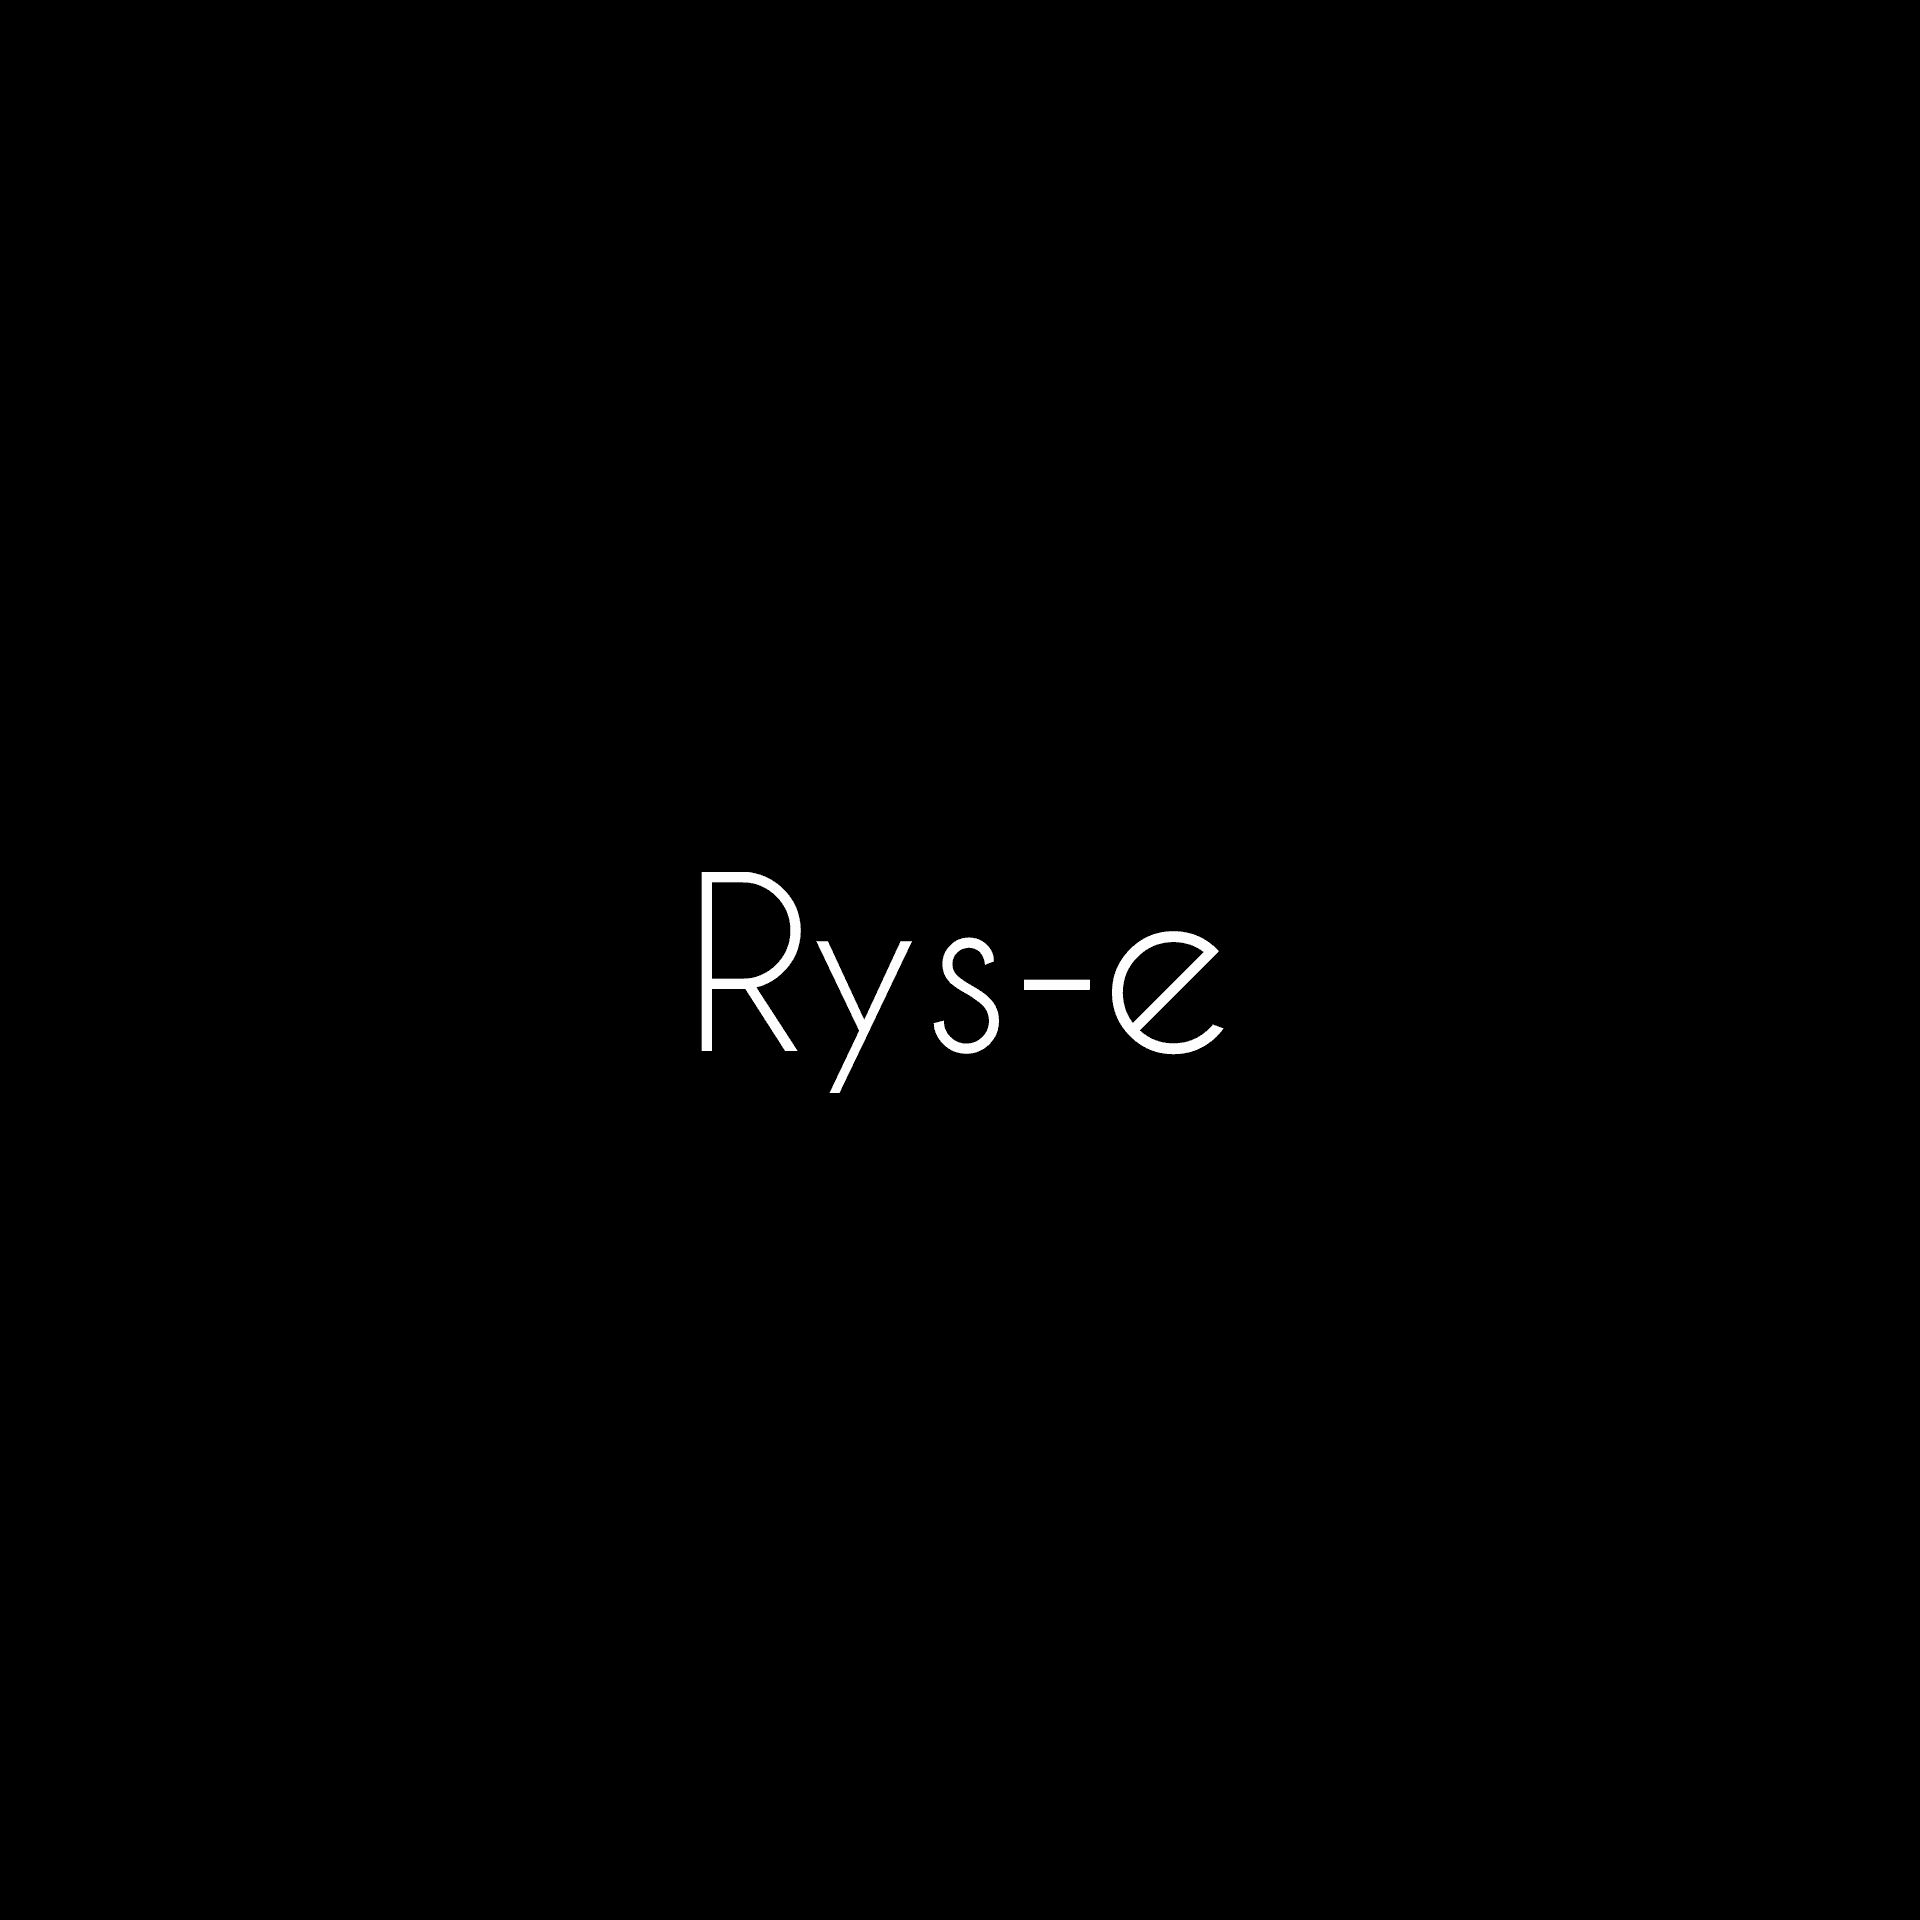 Rys-E